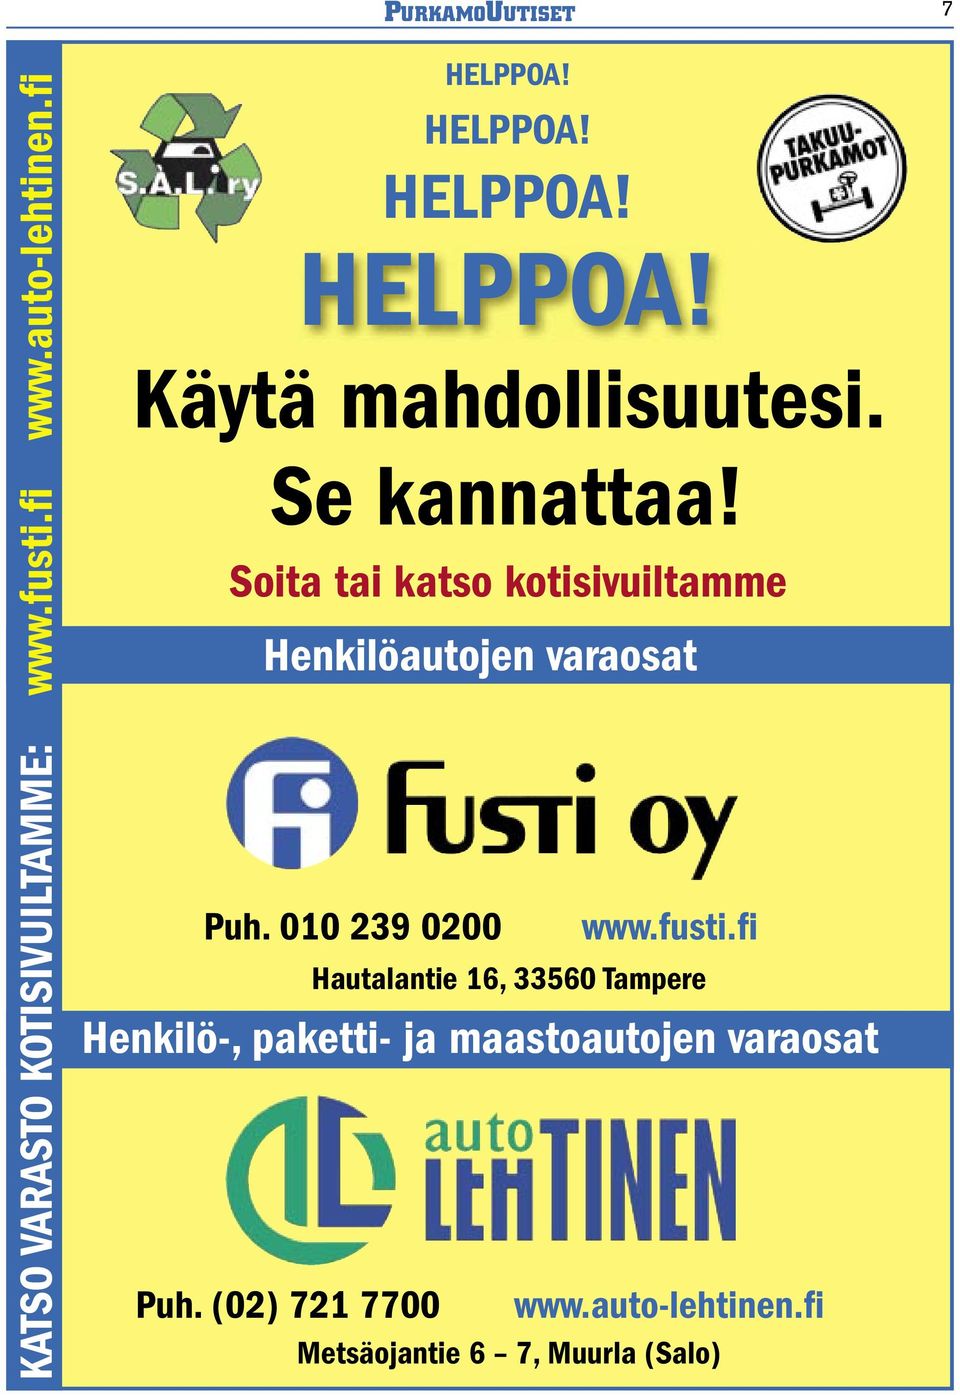 010 239 0200 www.fusti.fi Henkilö-, paketti- ja maastoautojen varaosat Puh.